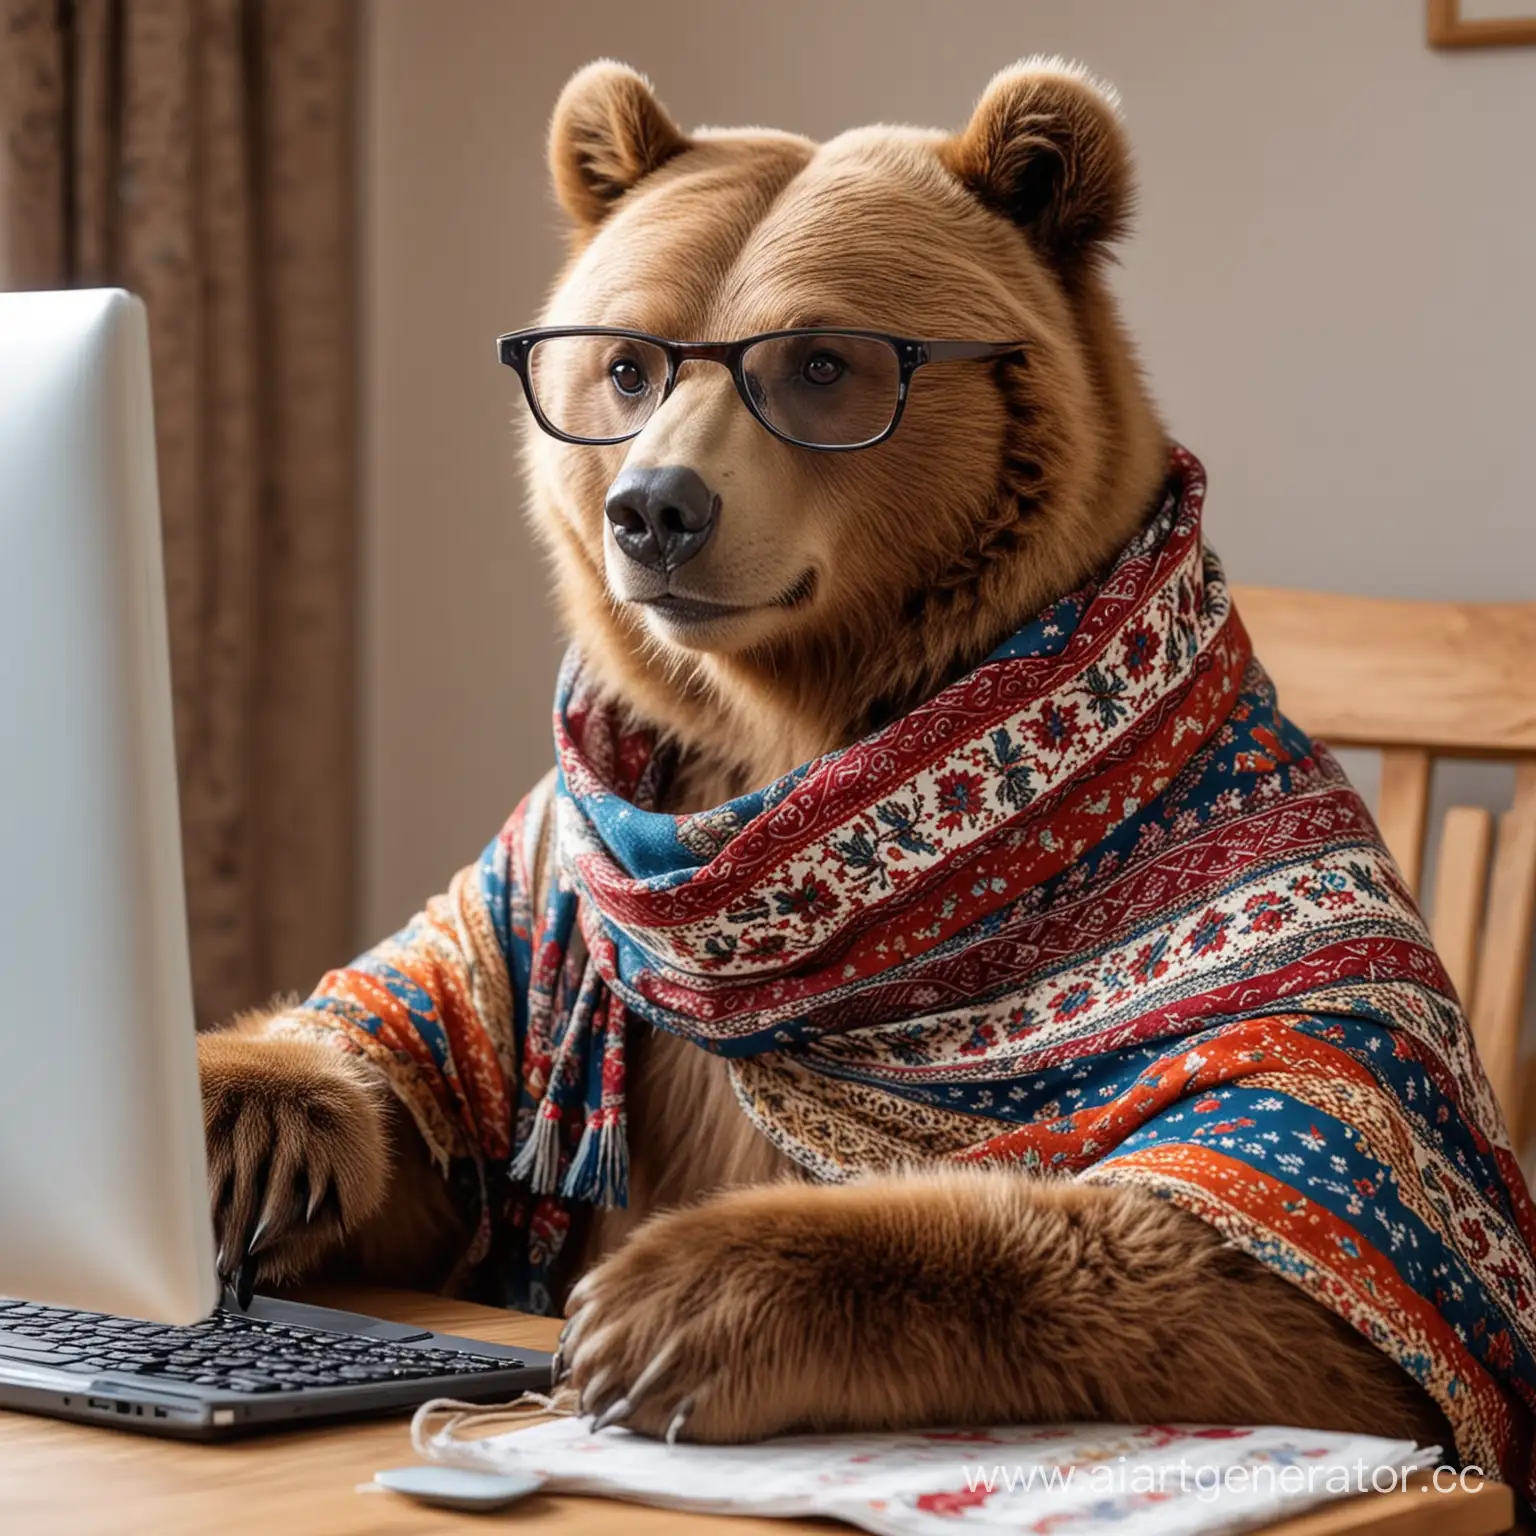 бурый медведь в русском платке с узорами в очках который сидит и работает за компьютером
